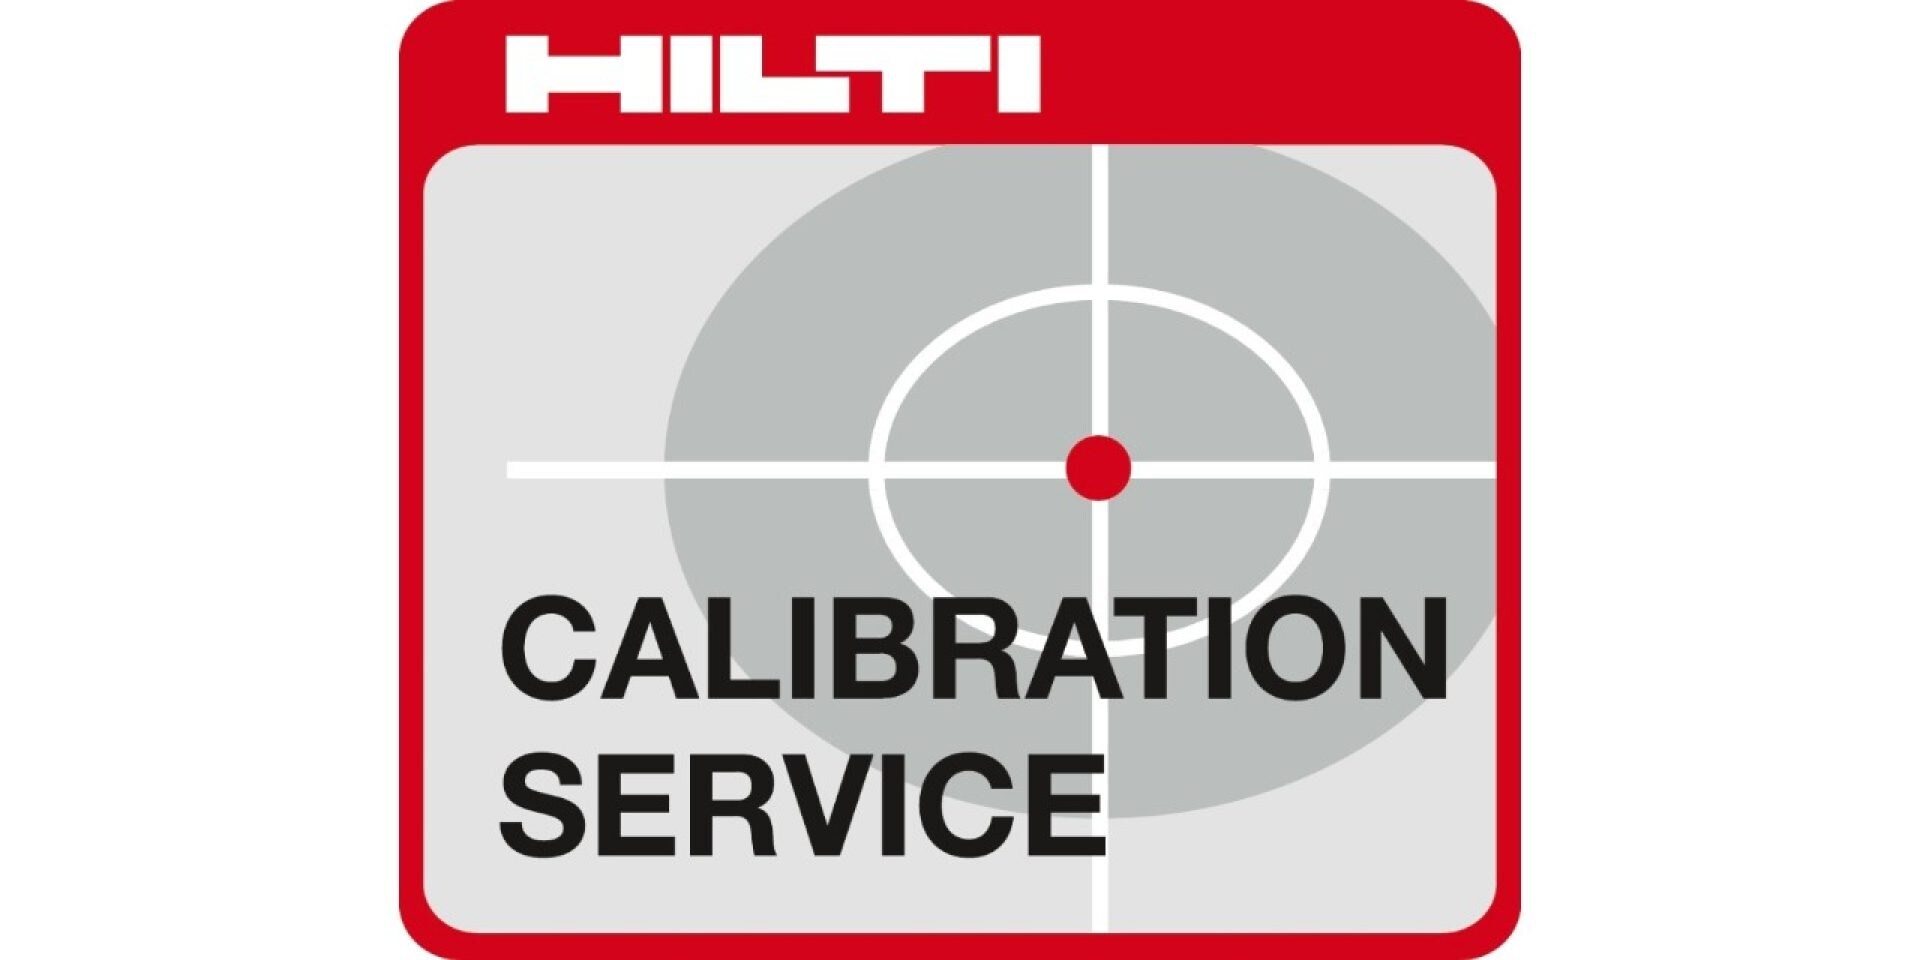 Servicio de calibración Hilti